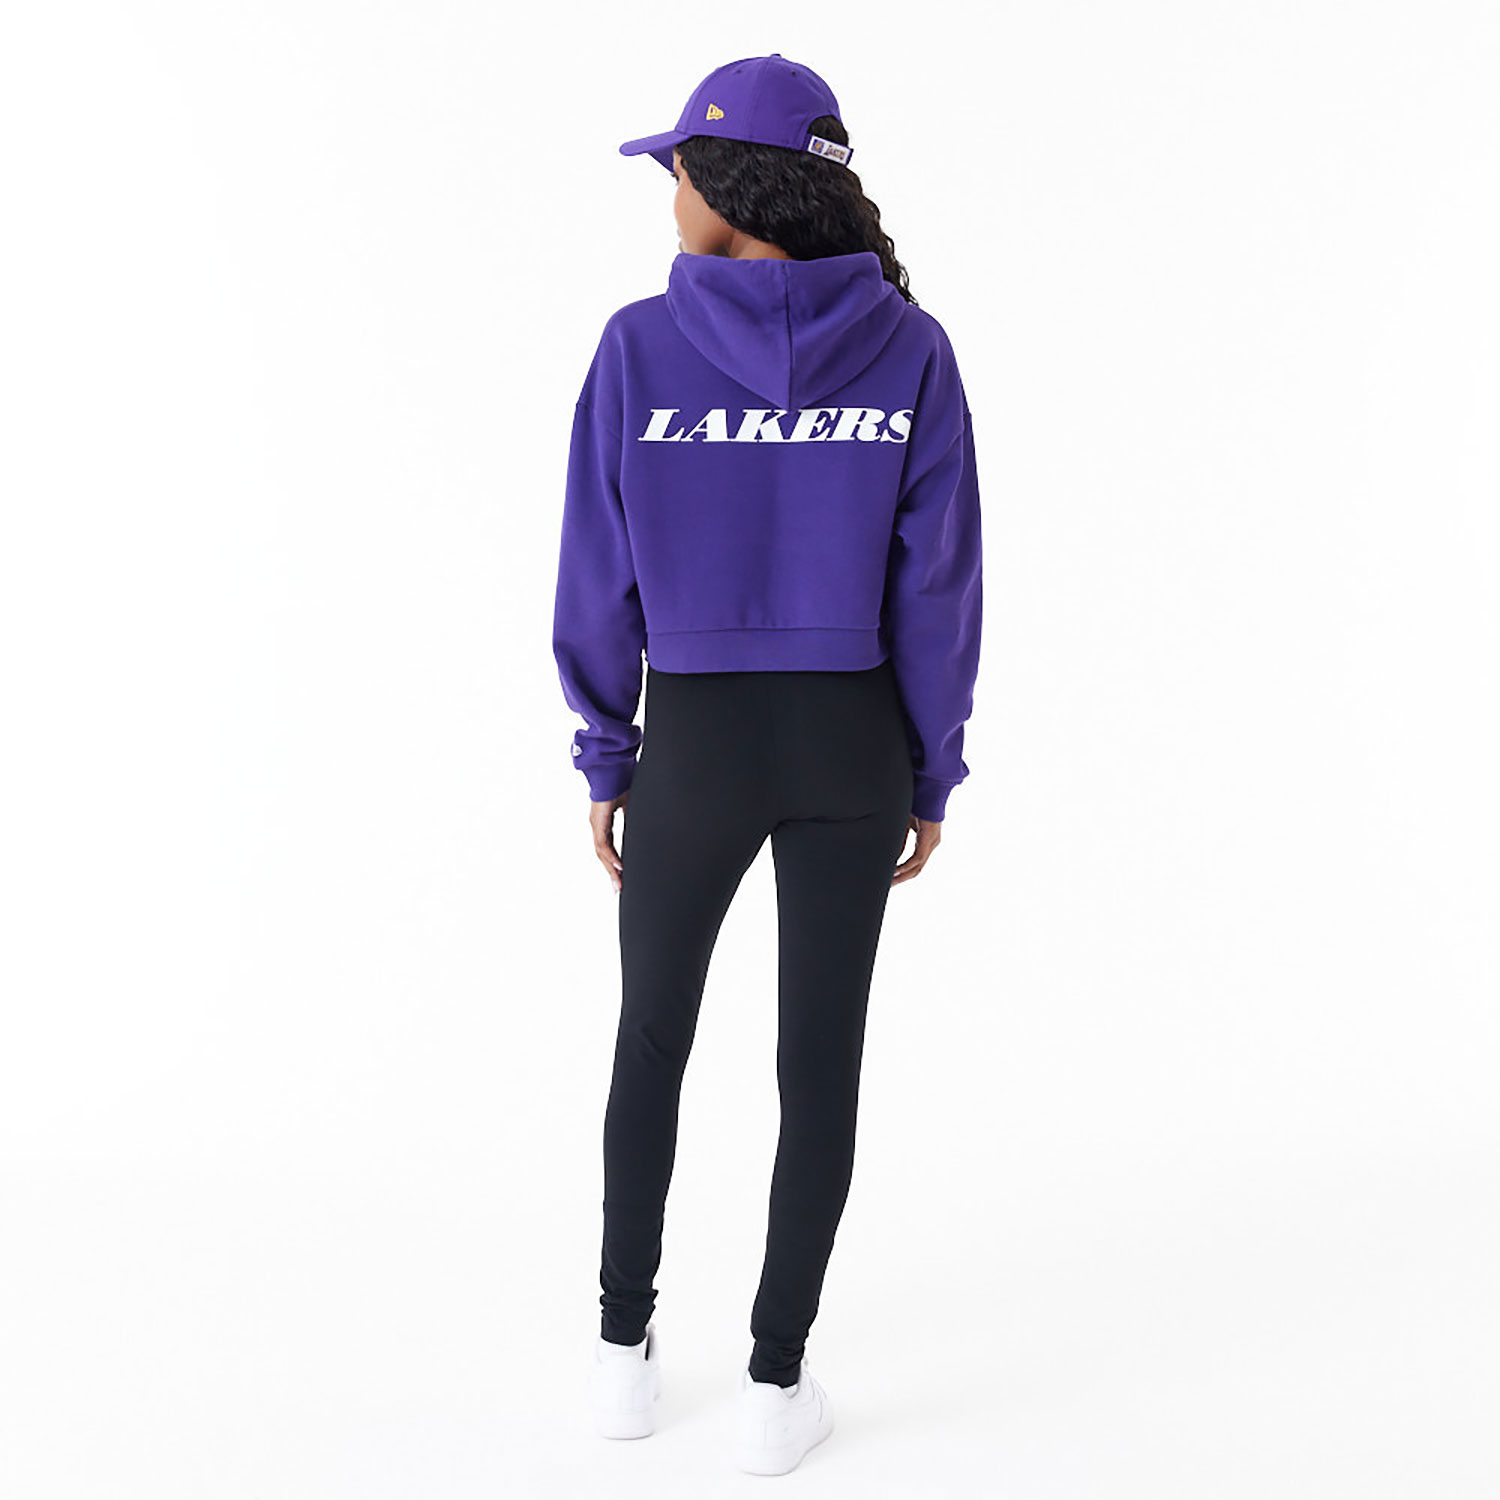 LA Lakers Womens NBA Team Logo Purple Crop Pullover Hoodie